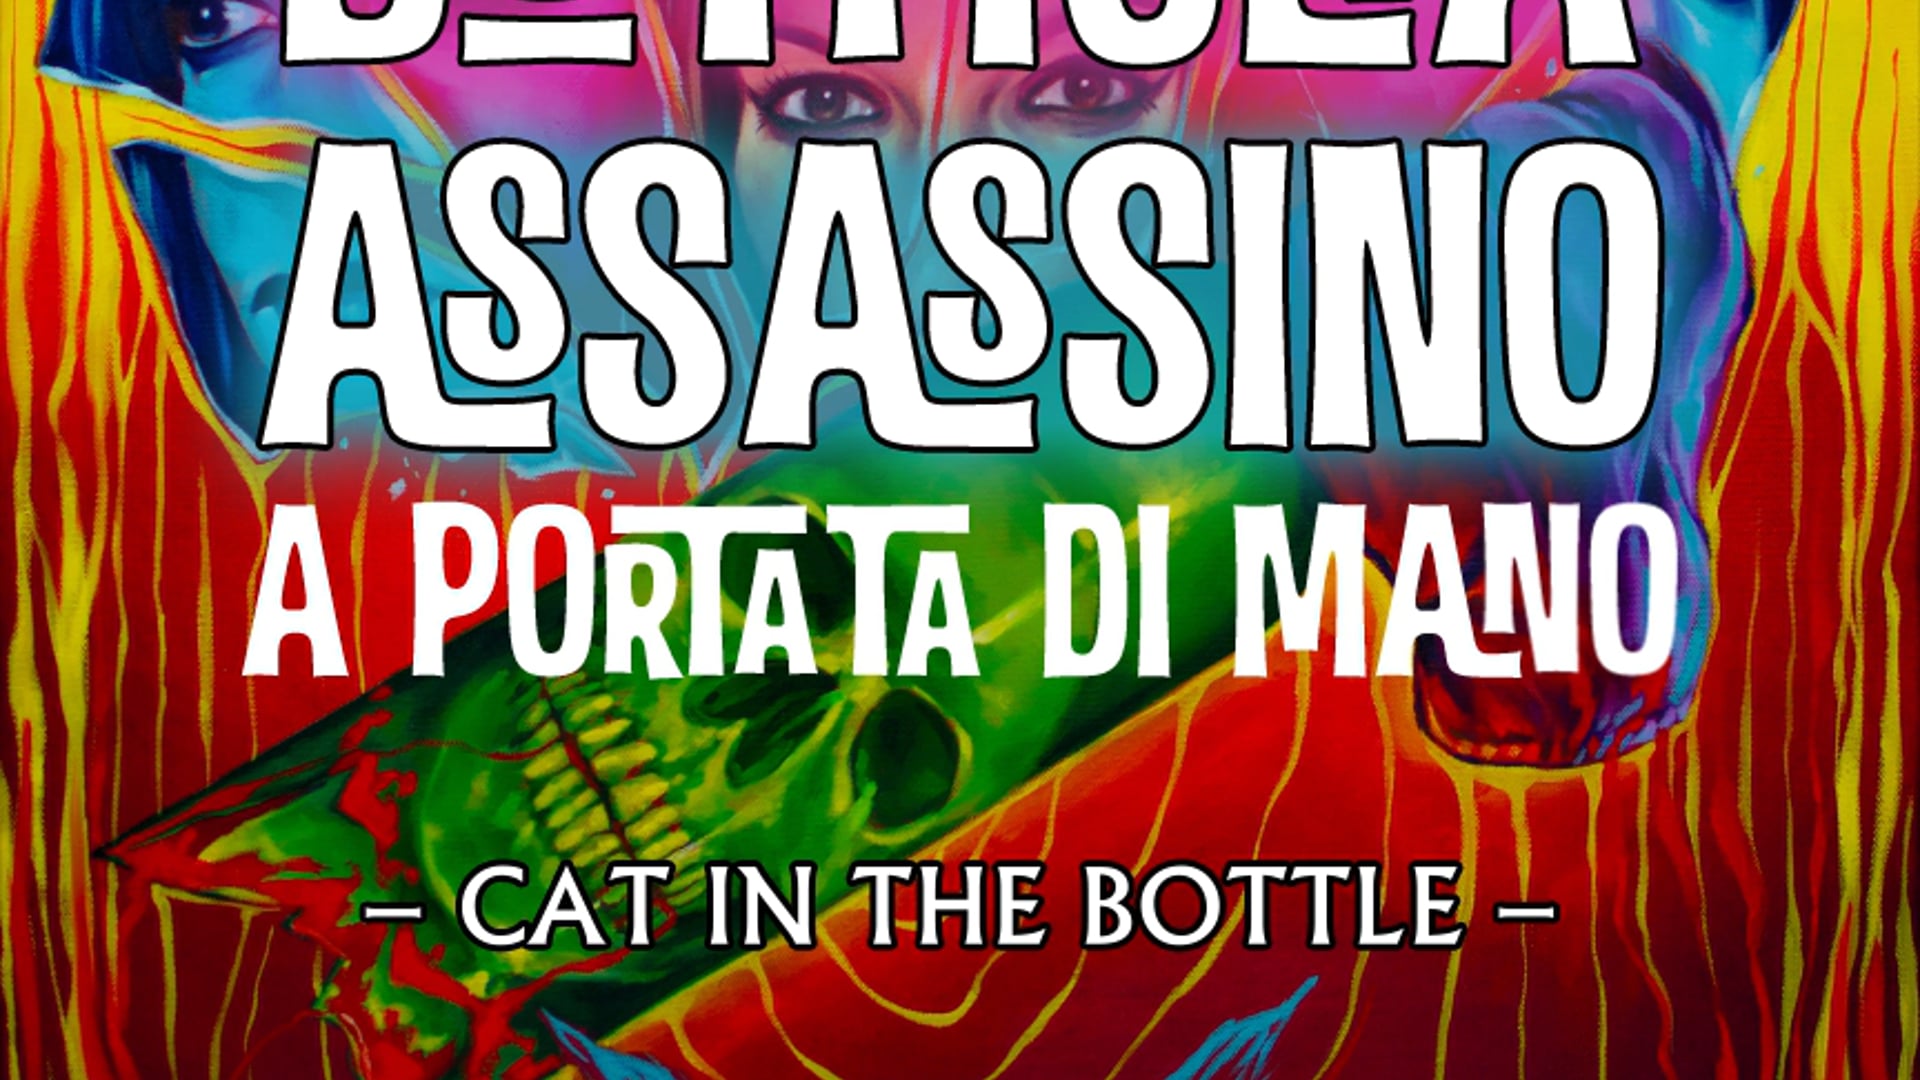 TRE CALDO GATTO BOTTIGLIA ASSASSINO A PORTATA DI MANO - CAT IN THE BOTTLE - ANIMATED POSTER